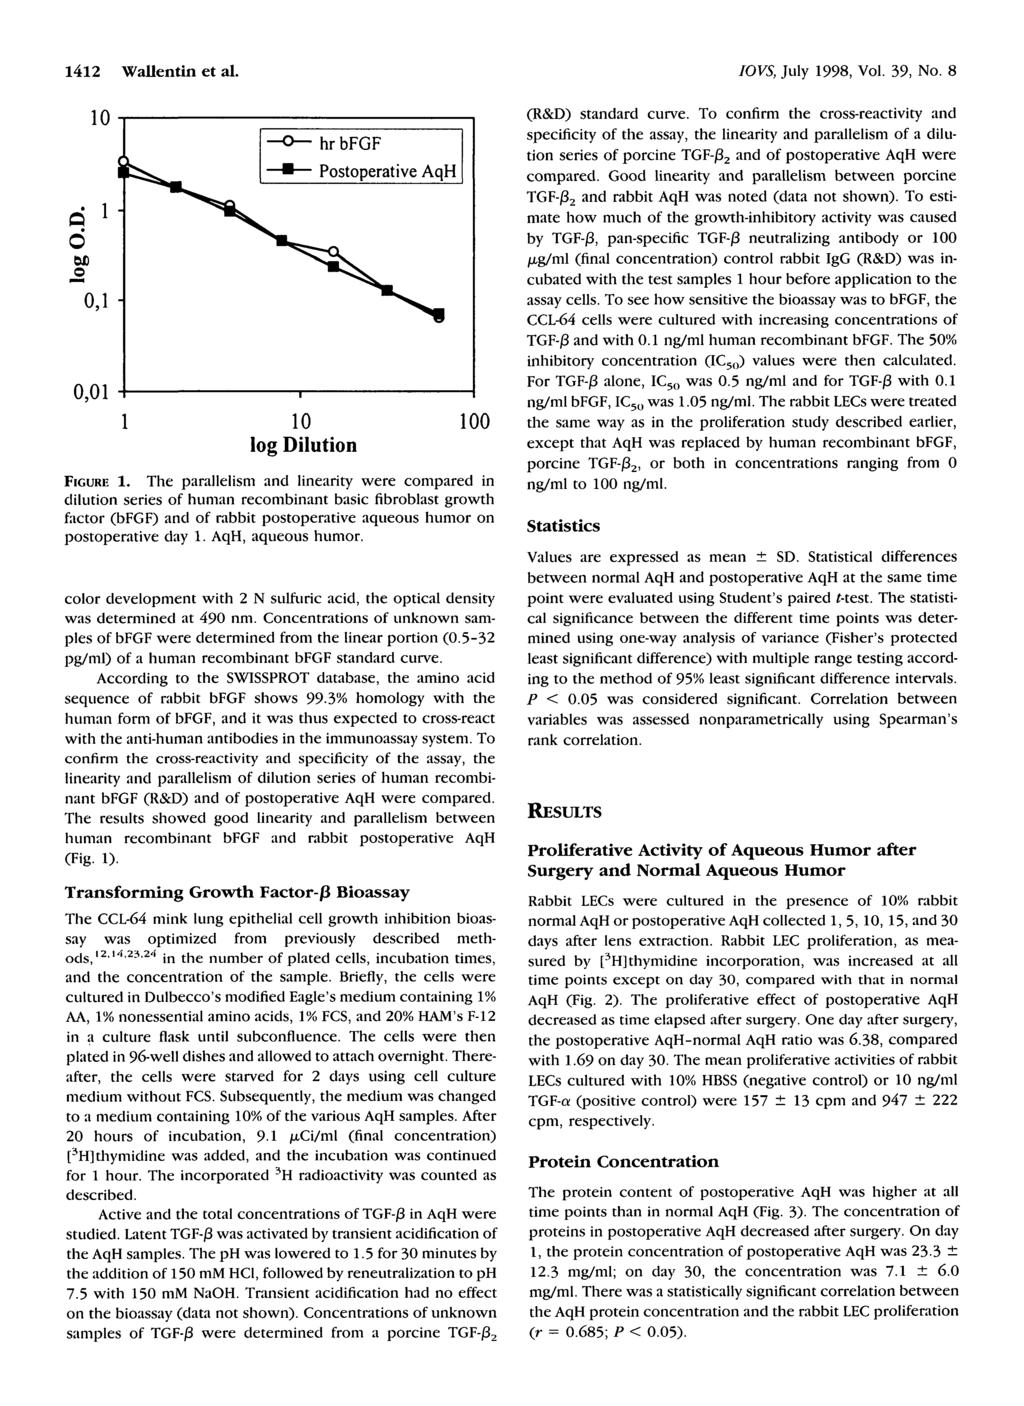 1412 Wallentin et al. IOVS, July 1998, Vol. 39, No. 8 q 6 o,i- 0,01 hr bfgf log Dilution 0 FIGURE 1.